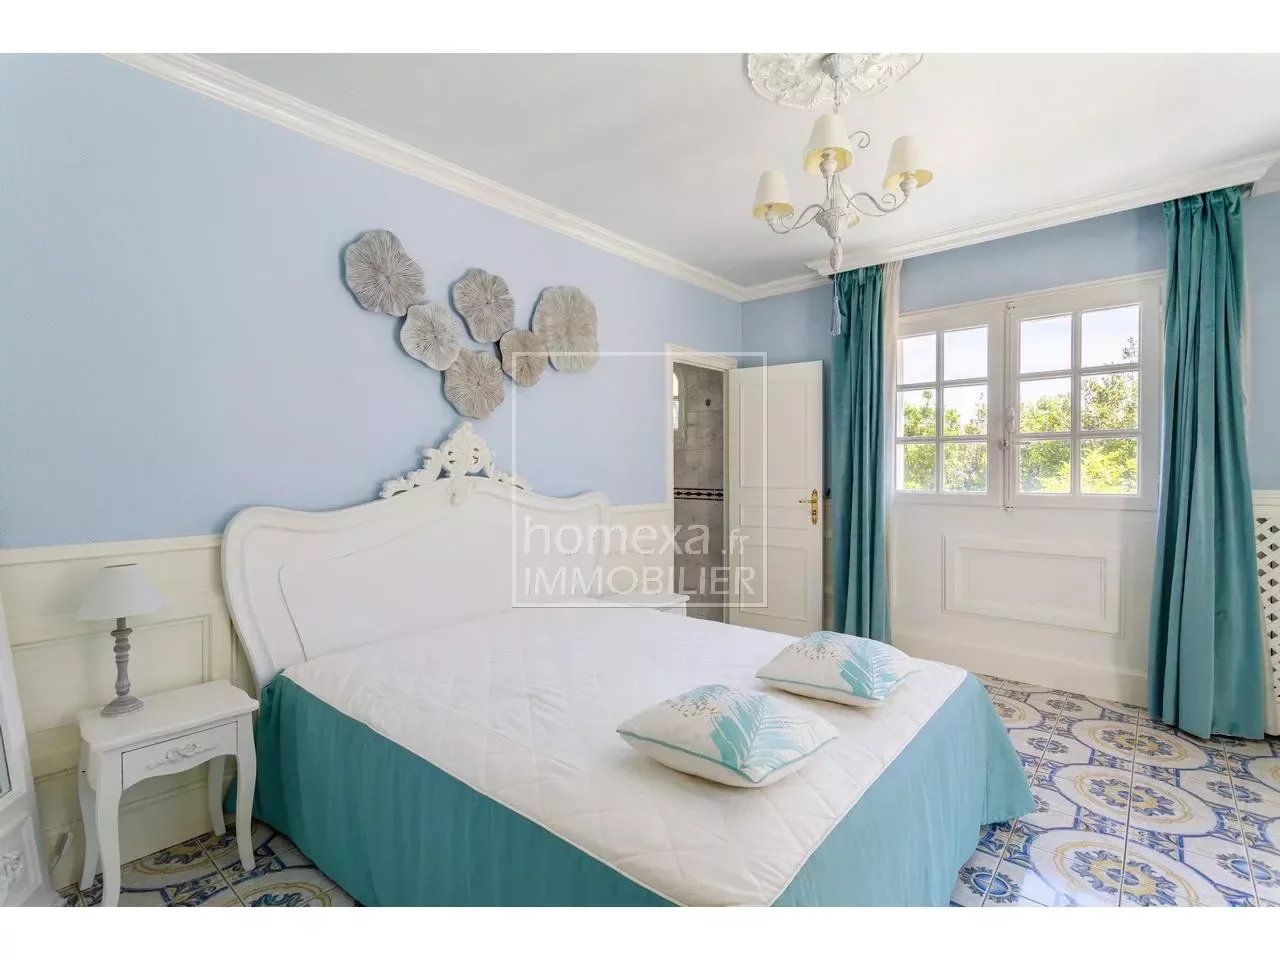 Maison  6 Rooms 263.32m2  for sale  1 890 000 €